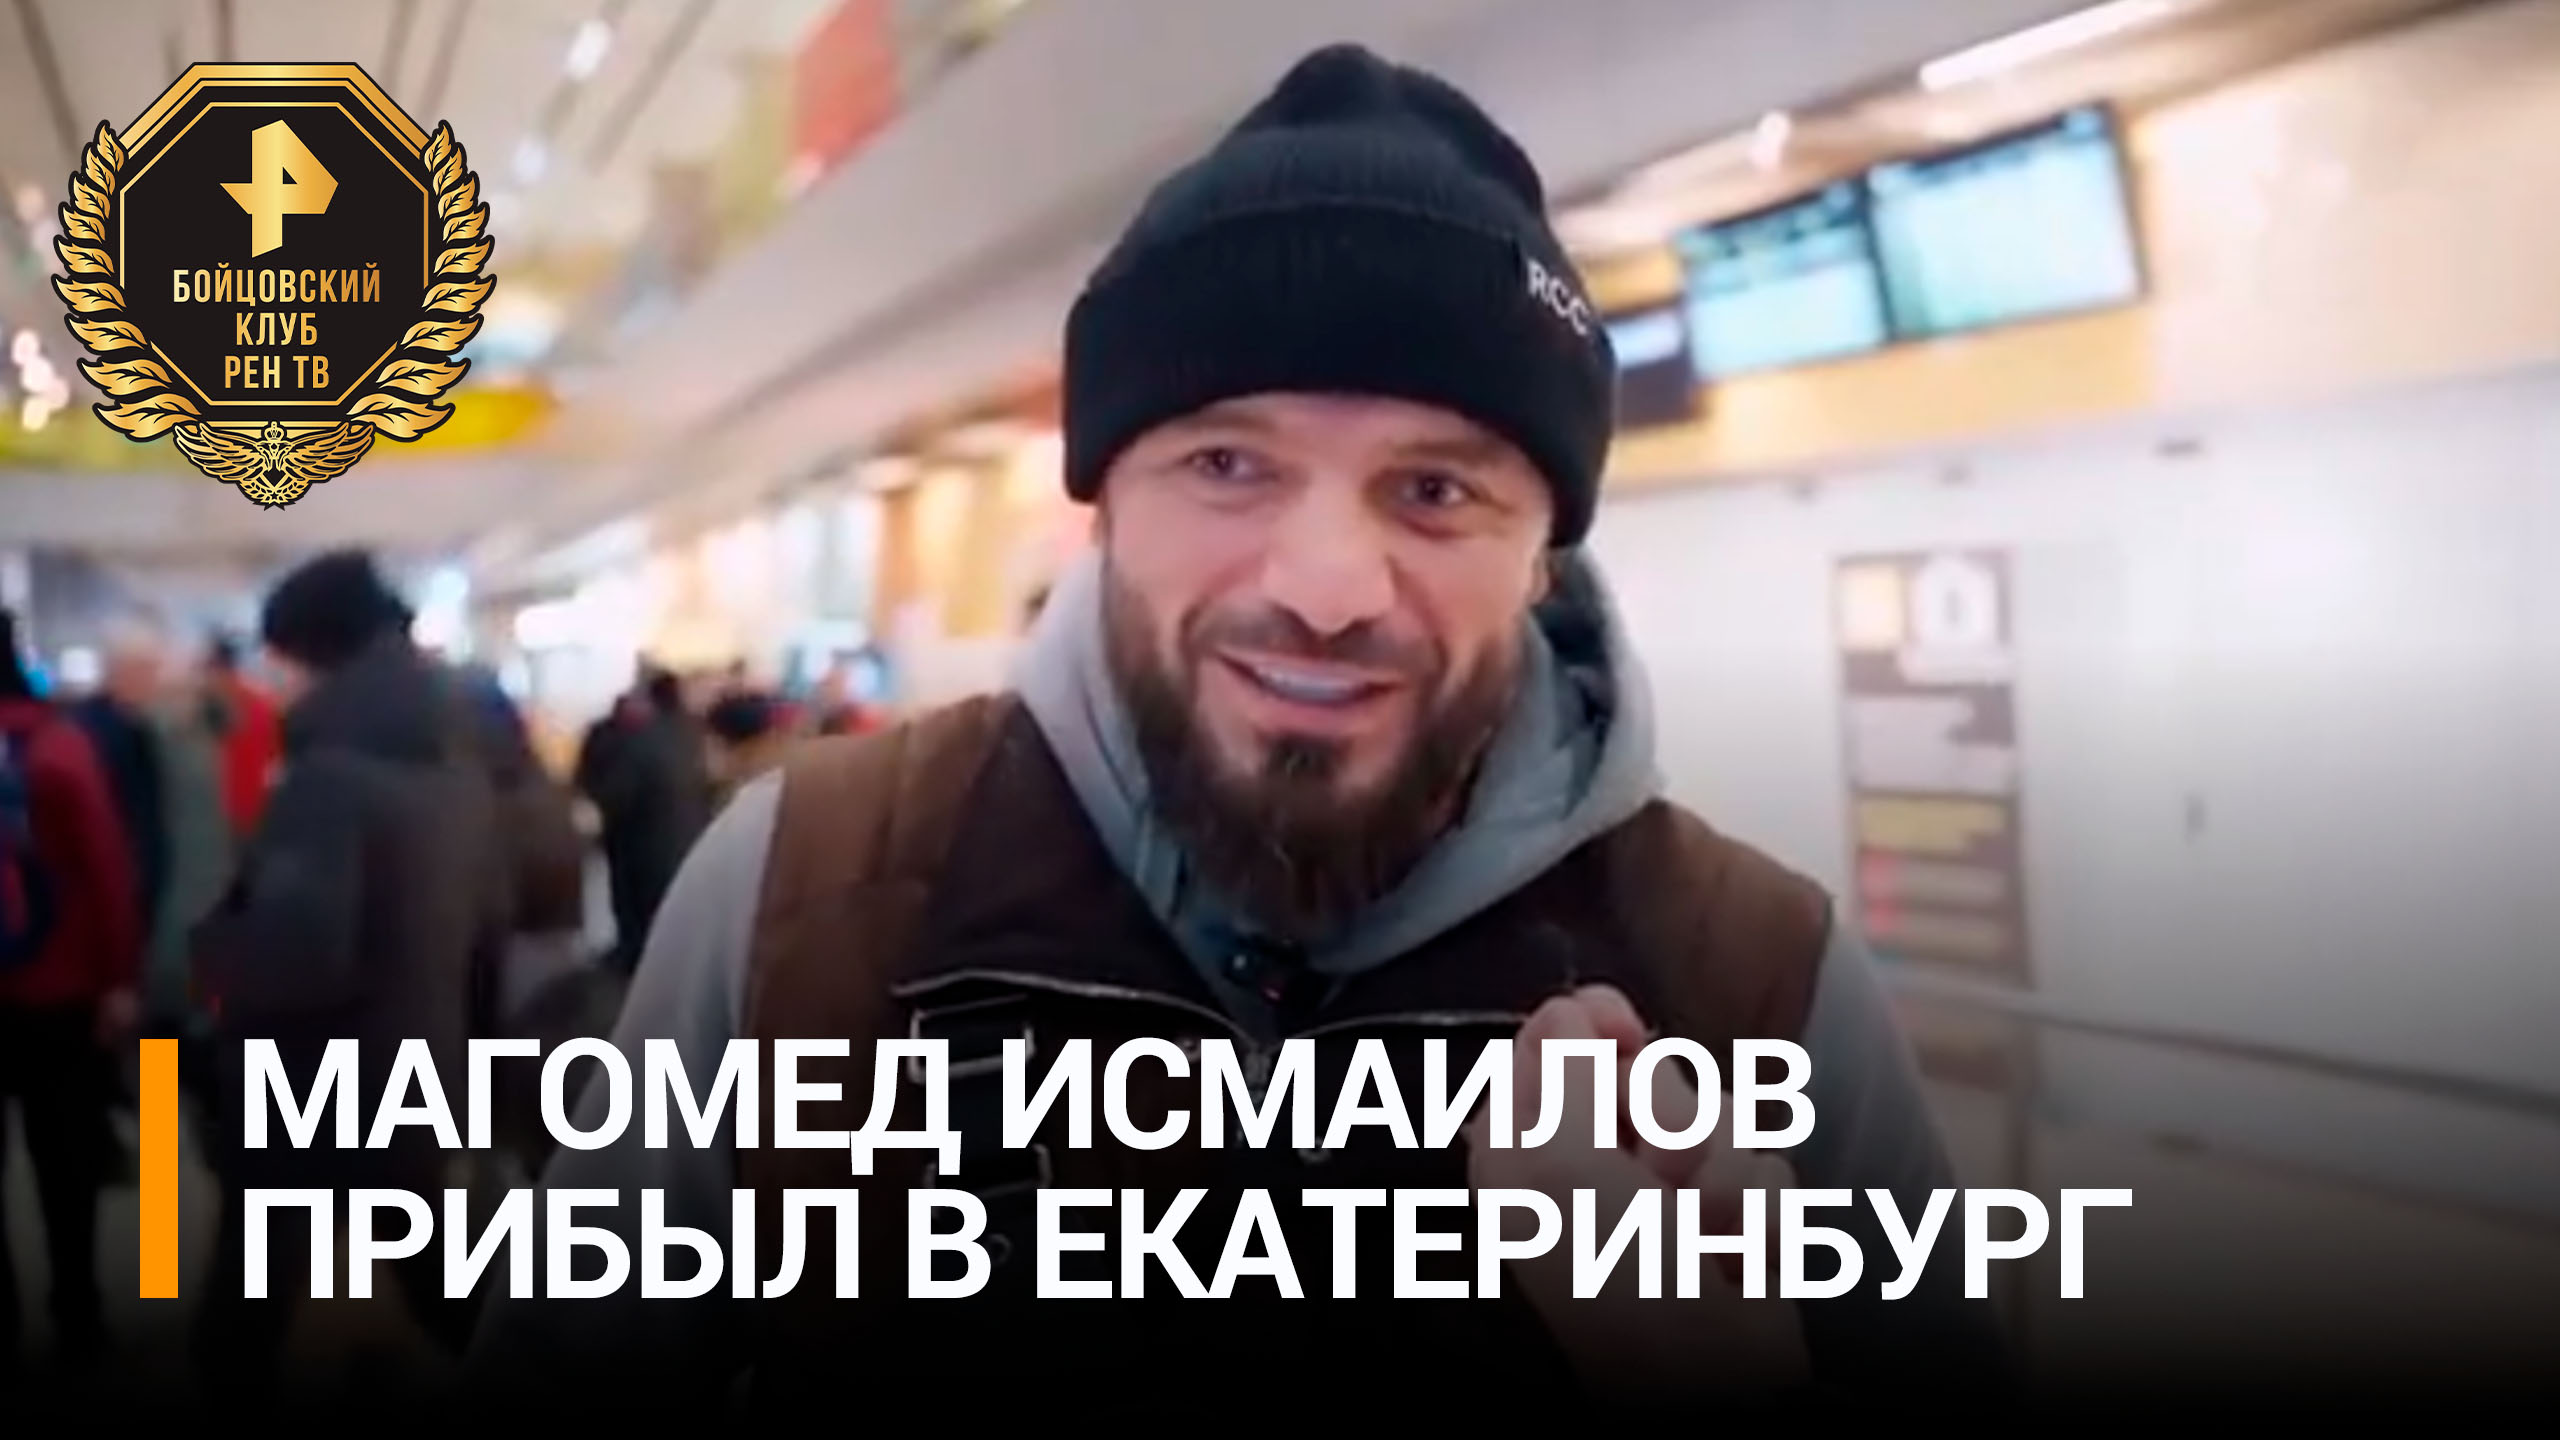 Исмаилов прилетел в Екатеринбург на бой со Шлеменко / РЕН Новости